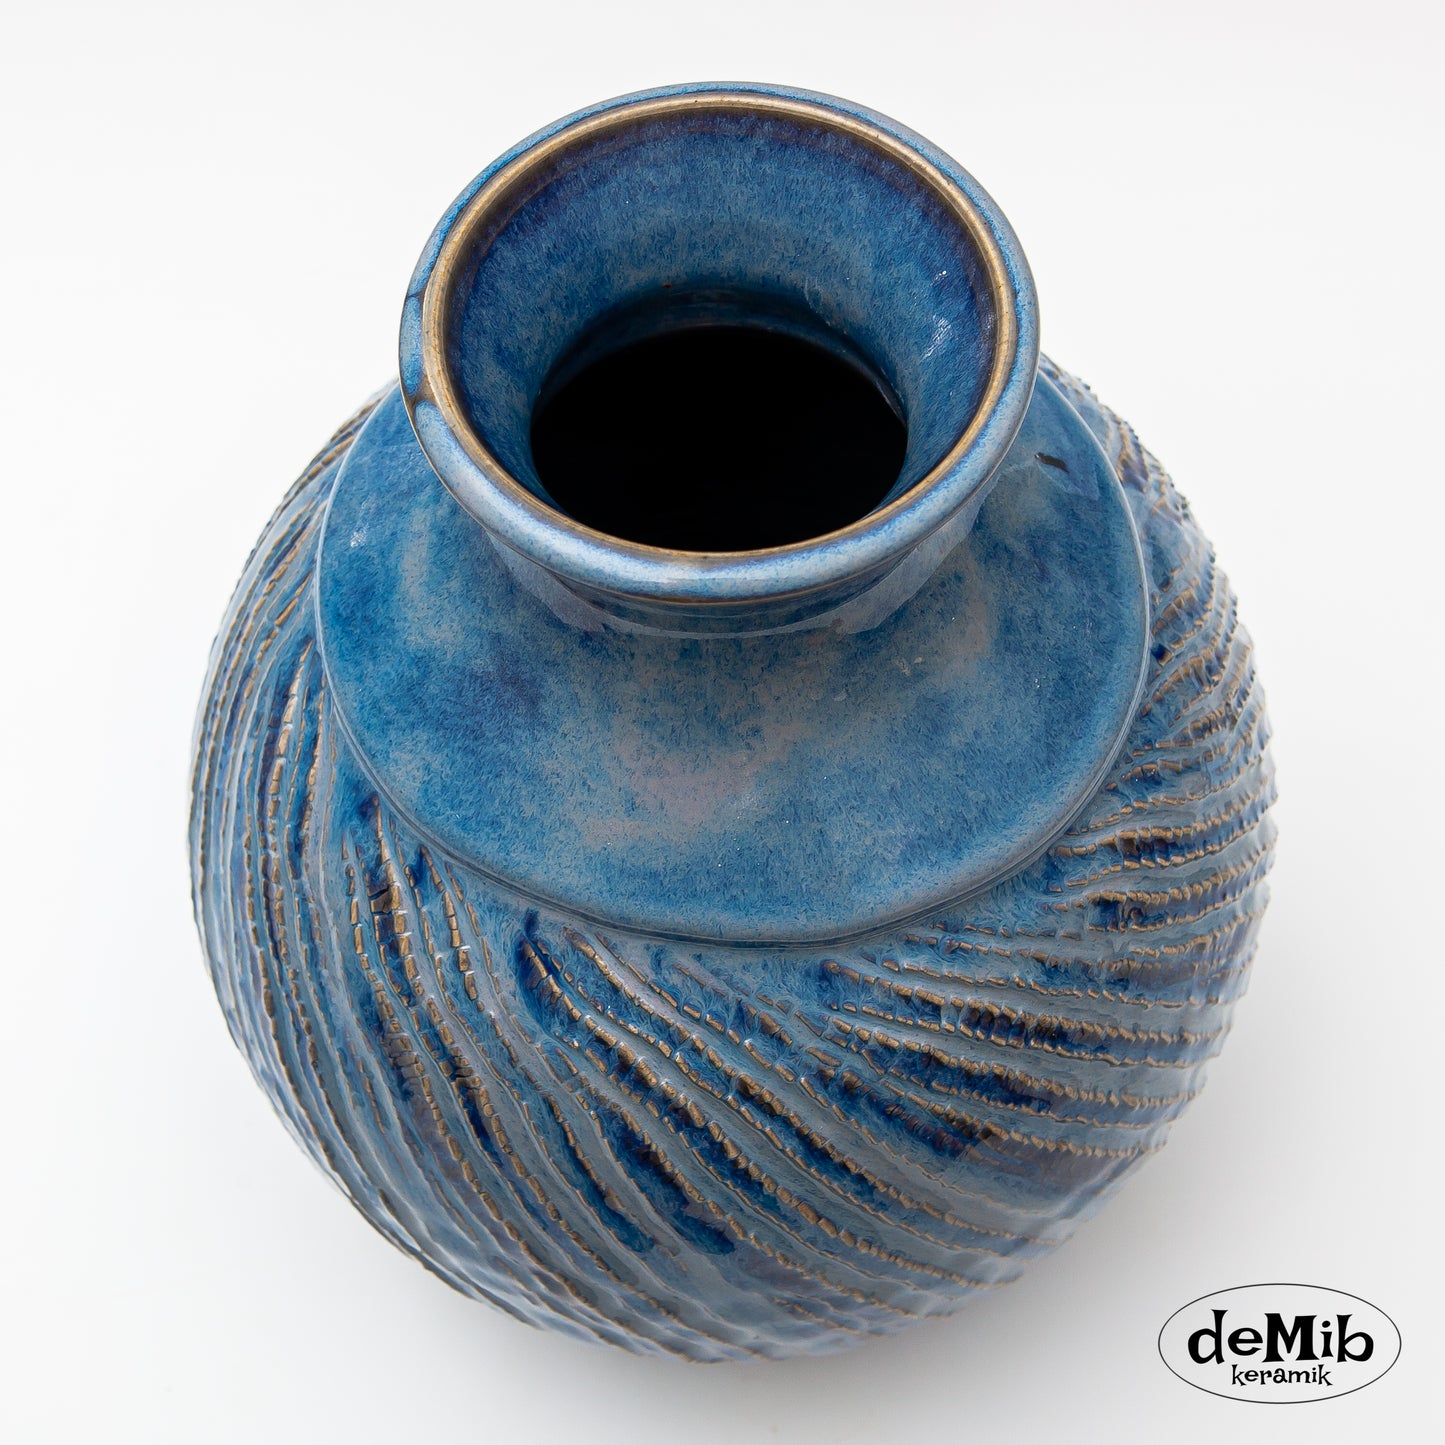 Carved Stoneware Vase in Floating Blue (26 cm)